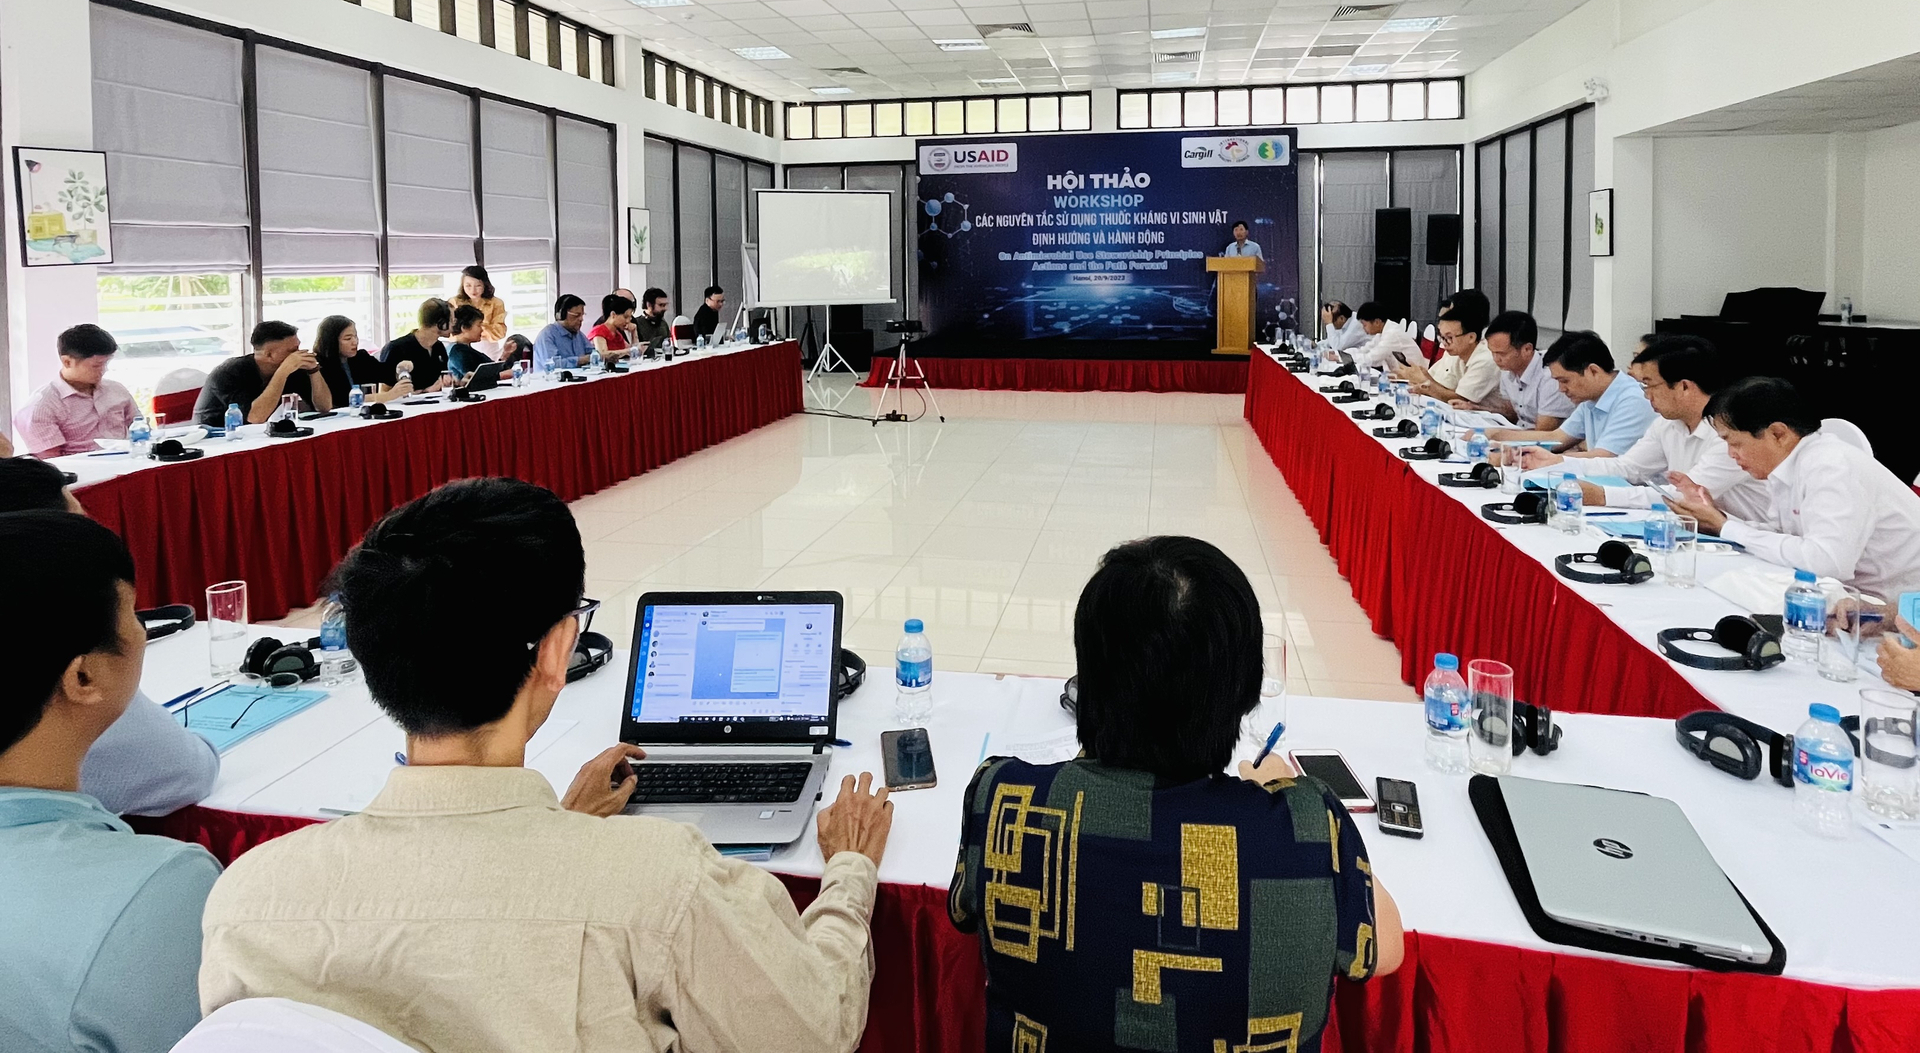 Hội thảo 'Nguyên tắc sử dụng thuốc kháng vi sinh: Định hướng và hành động' diễn ra sáng 20/9 tại Hà Nội thu hút đông đảo người tham dự. Ảnh: Hồng Thắm.